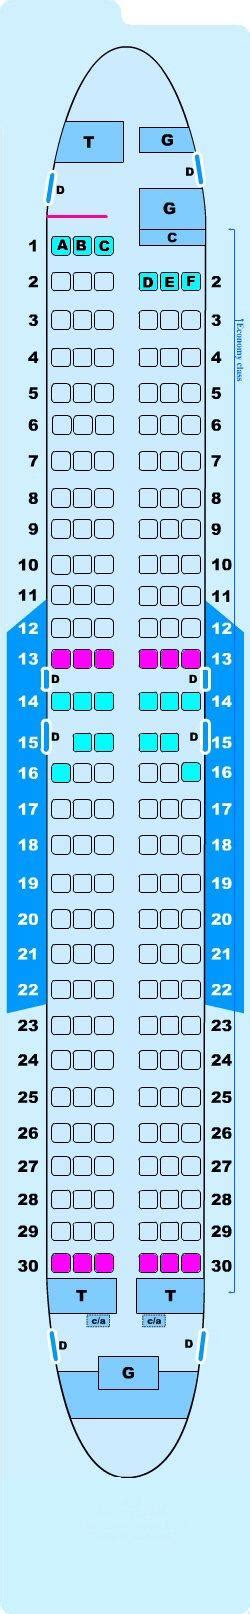 Boeing Seat Plan Gambaran